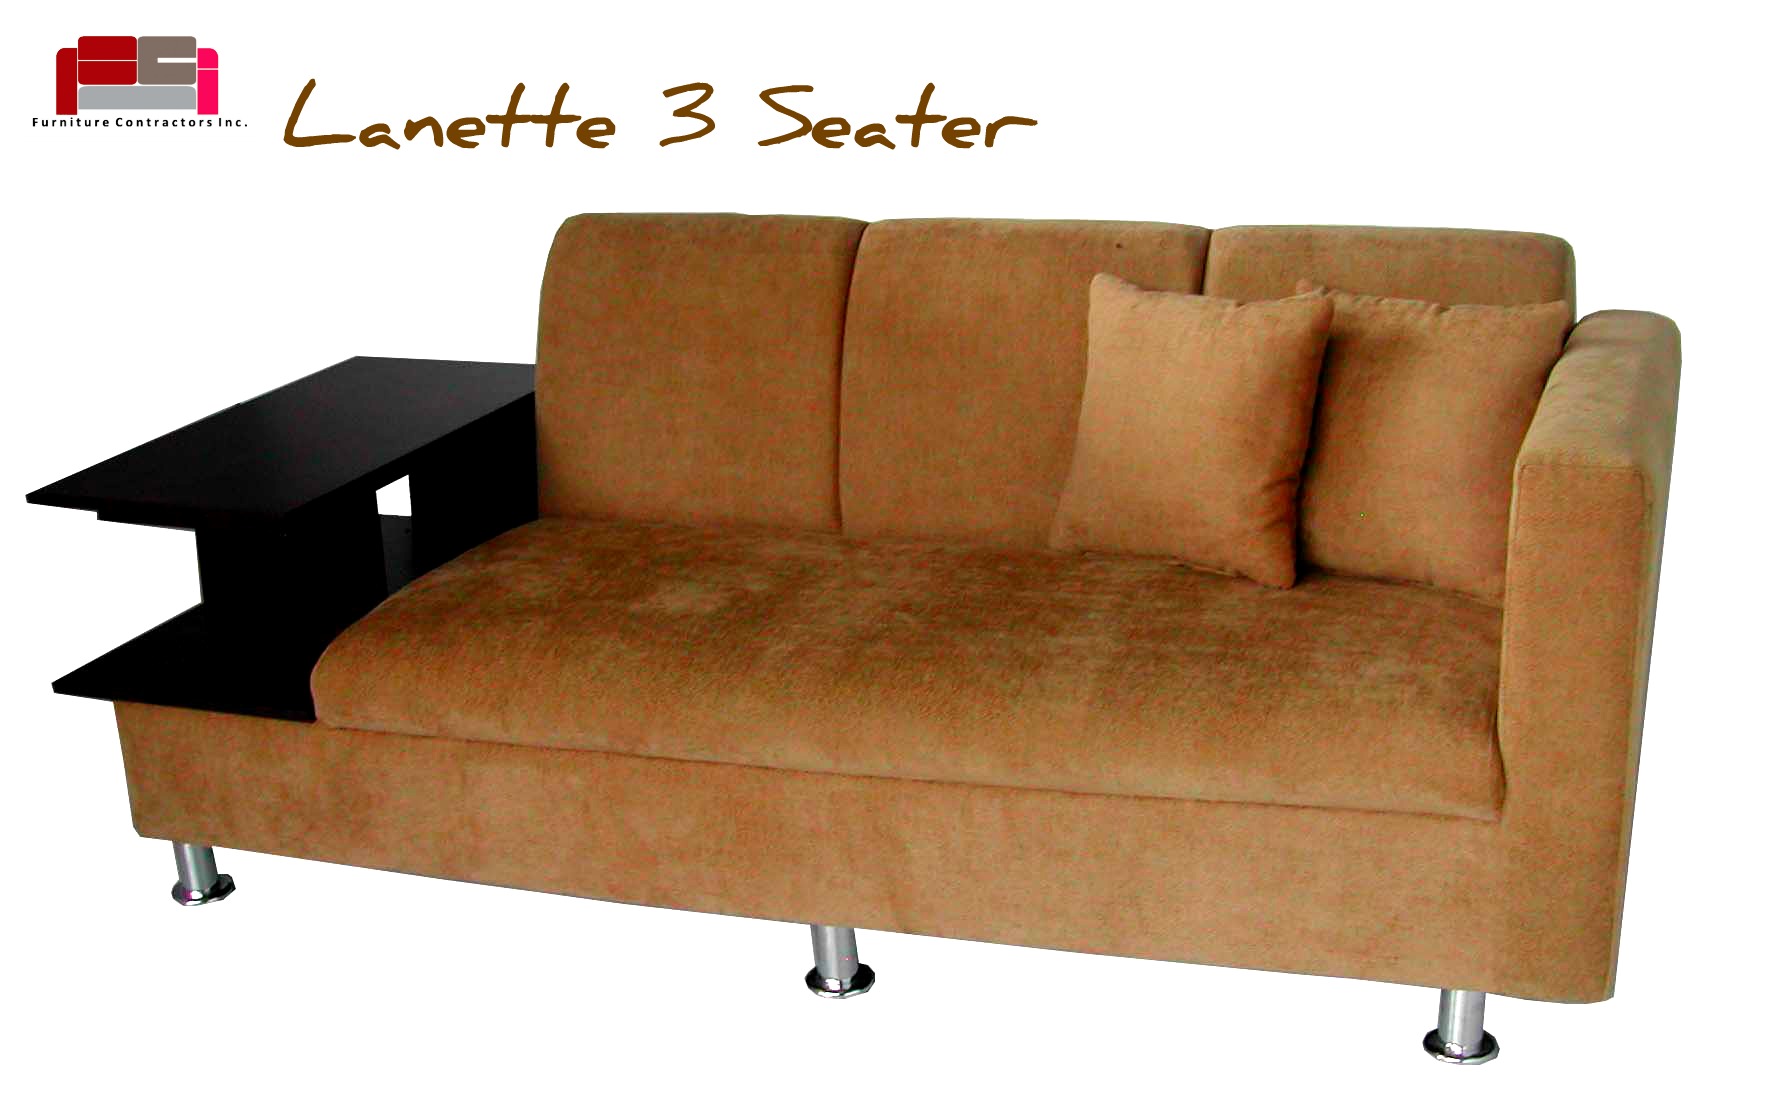 Sofa Set Furniture Contractors Inc